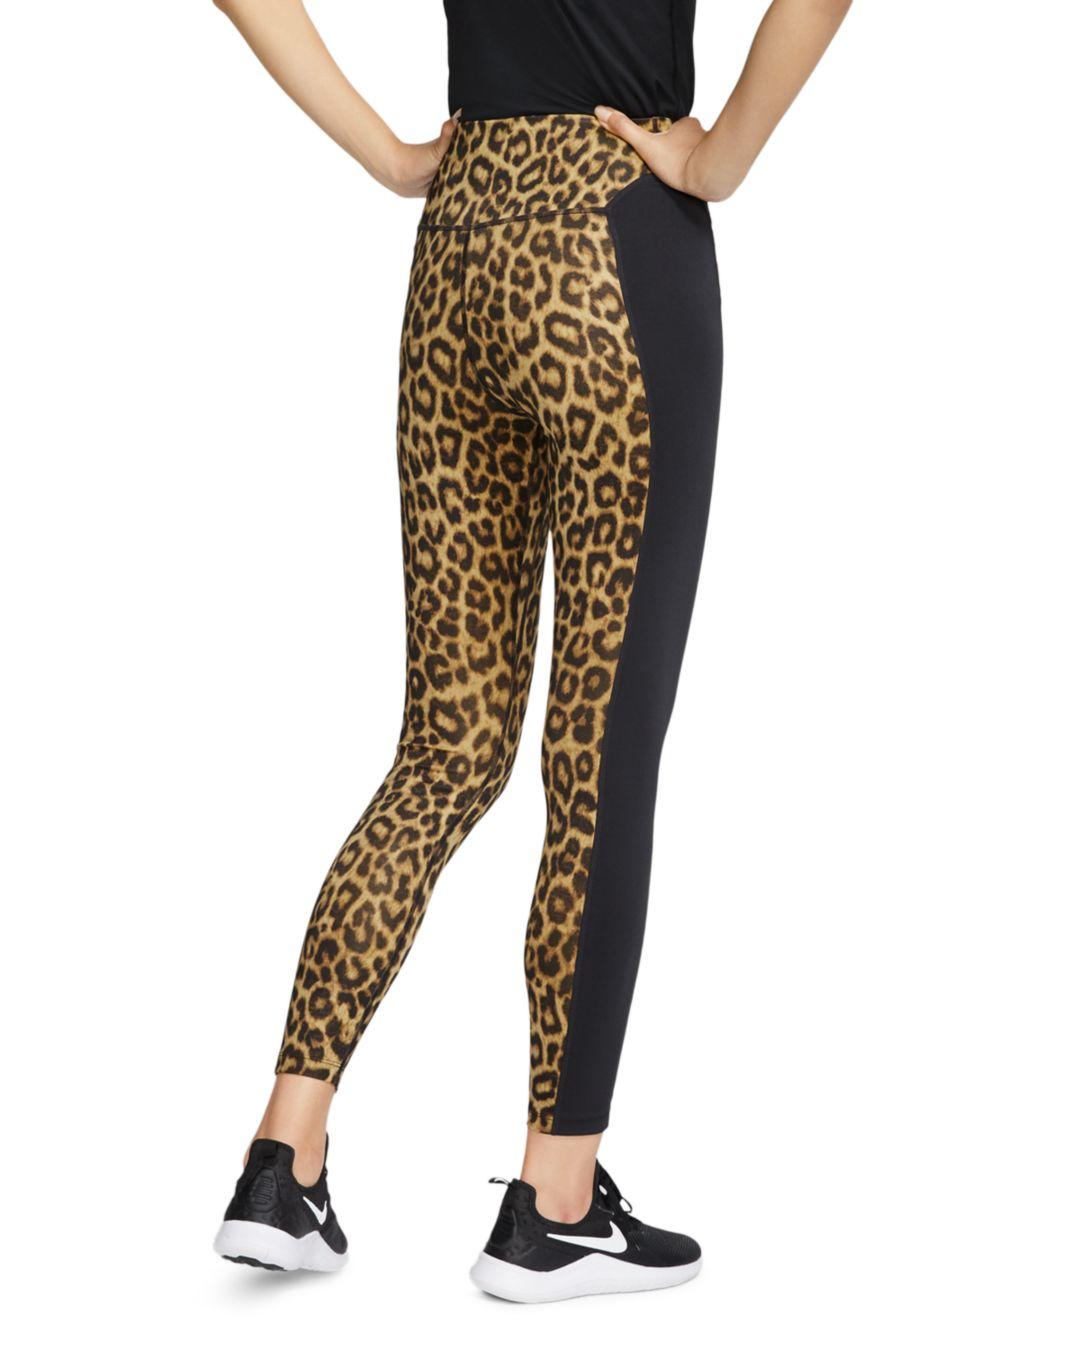 leopard tights nike